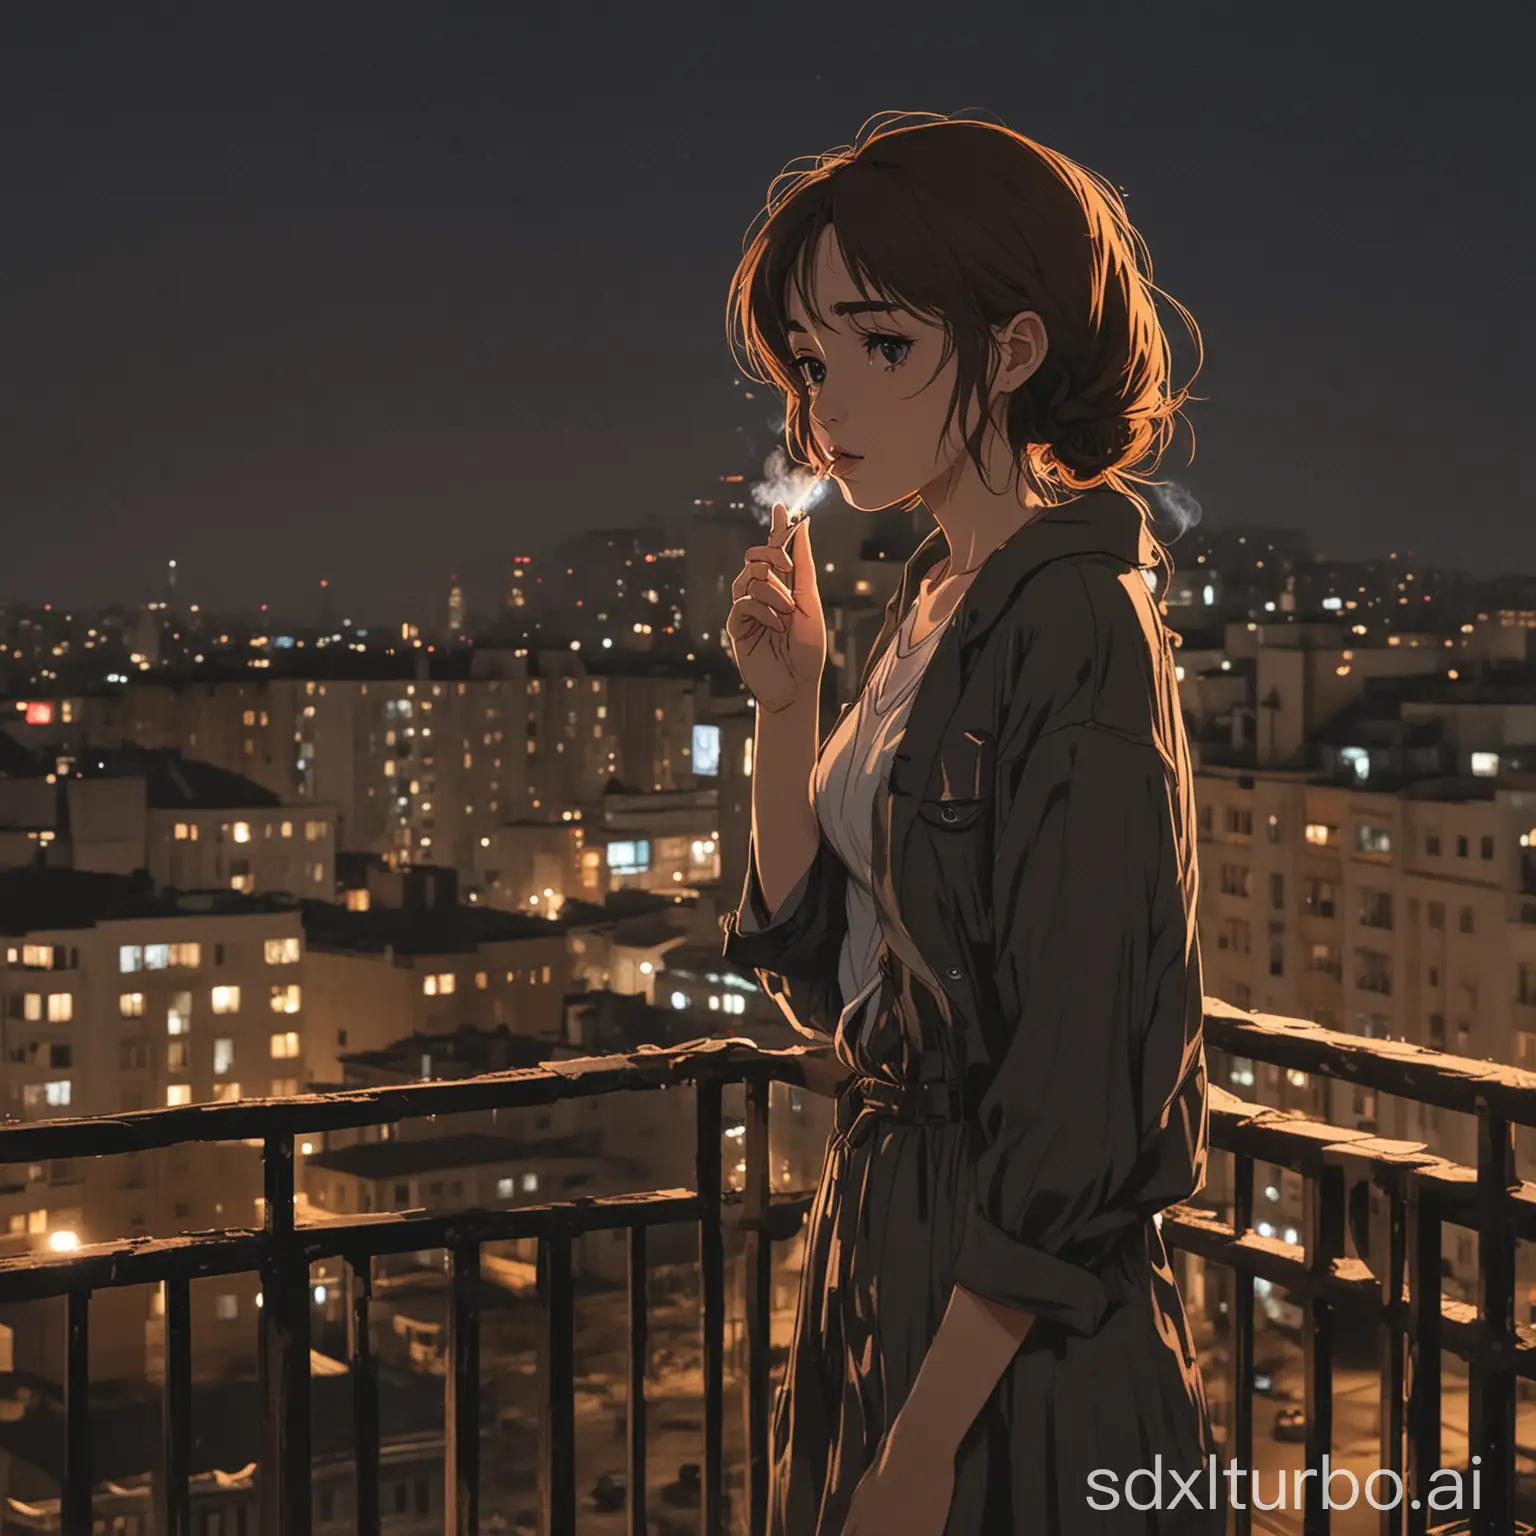 грустная аниме девушка стоит на открытом балконе в пост-советском сеттинге куря сигарету. время суток: ночь, виден город на фоне. сеттинг: пост-советская страна
